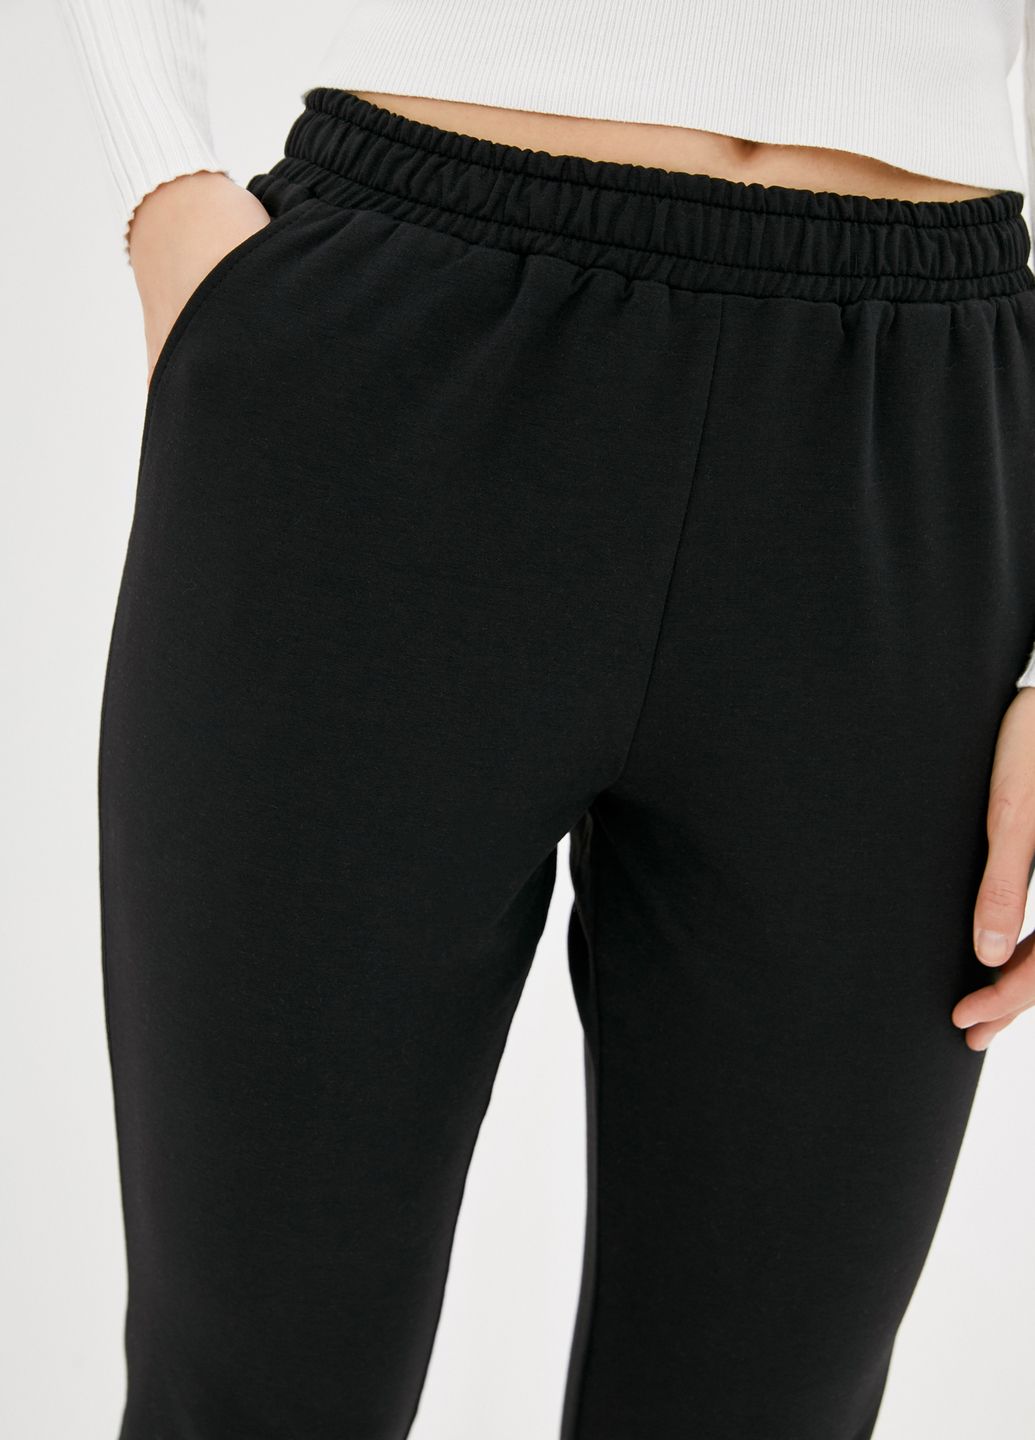 Купить Спортивные штаны женские Merlini Сити 600000055 - Черный, 42-44 в интернет-магазине